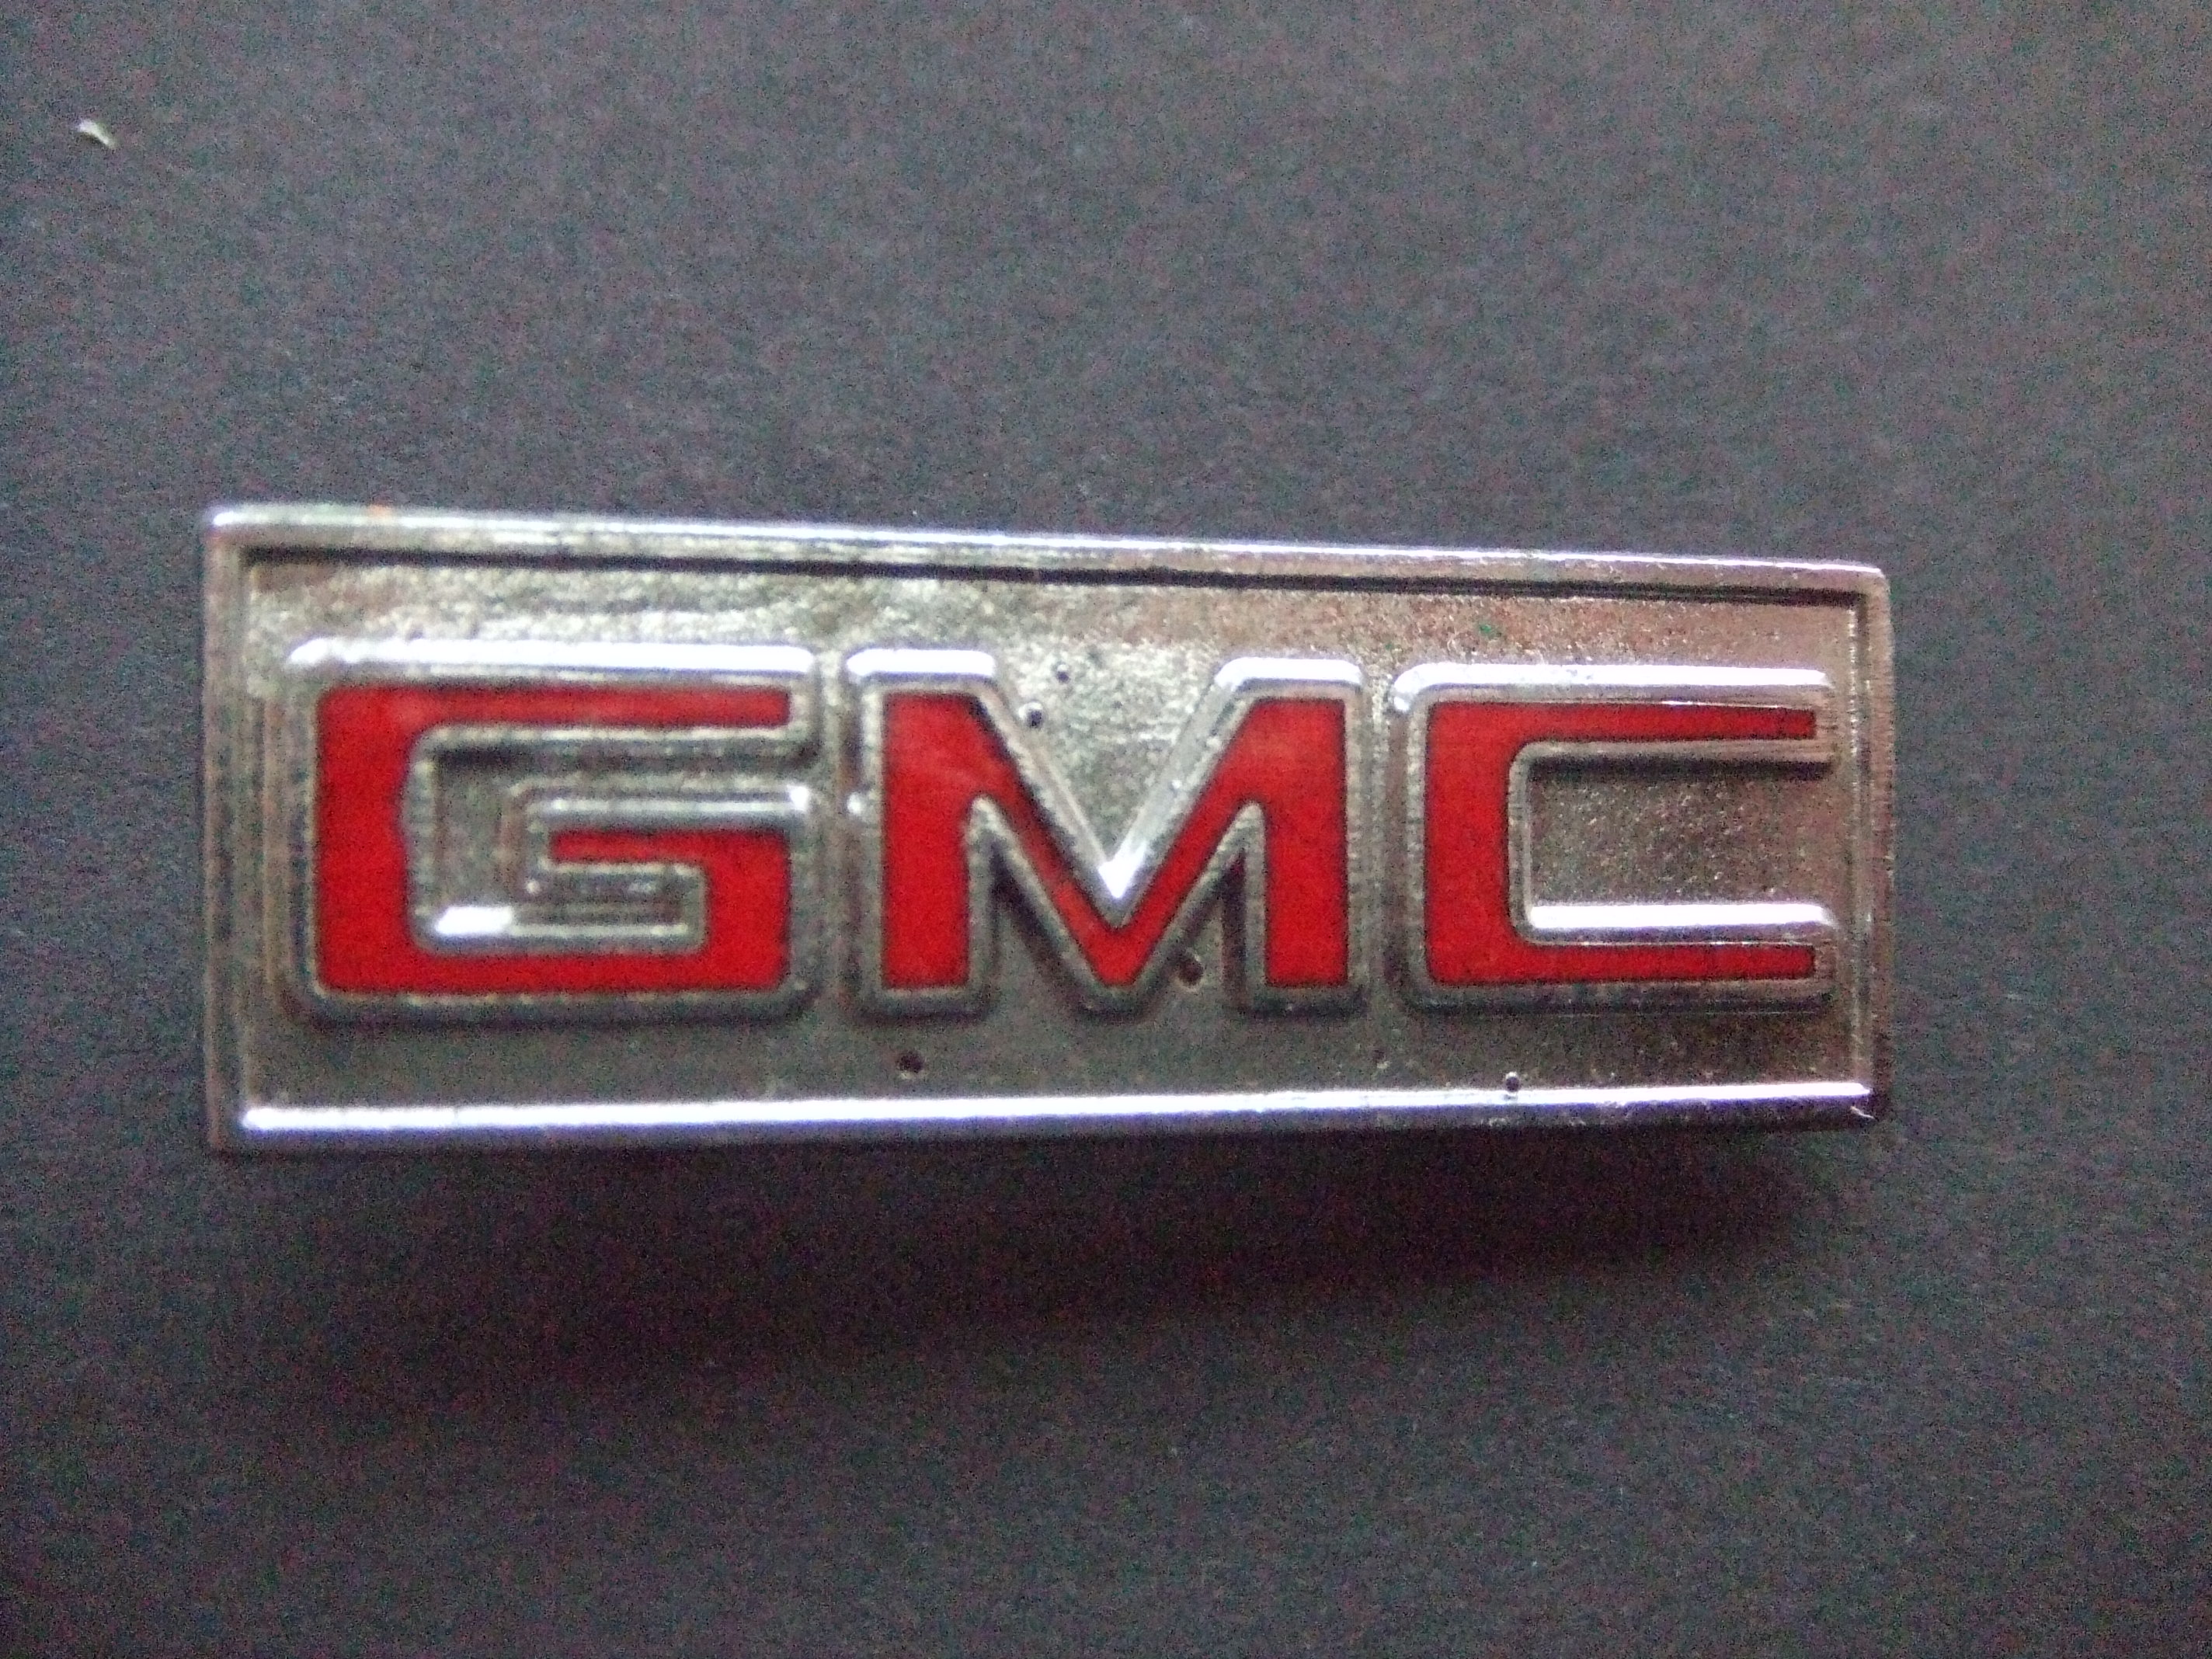 GMC General Motors Company,Amerikaans auto, vrachtwagenmerk